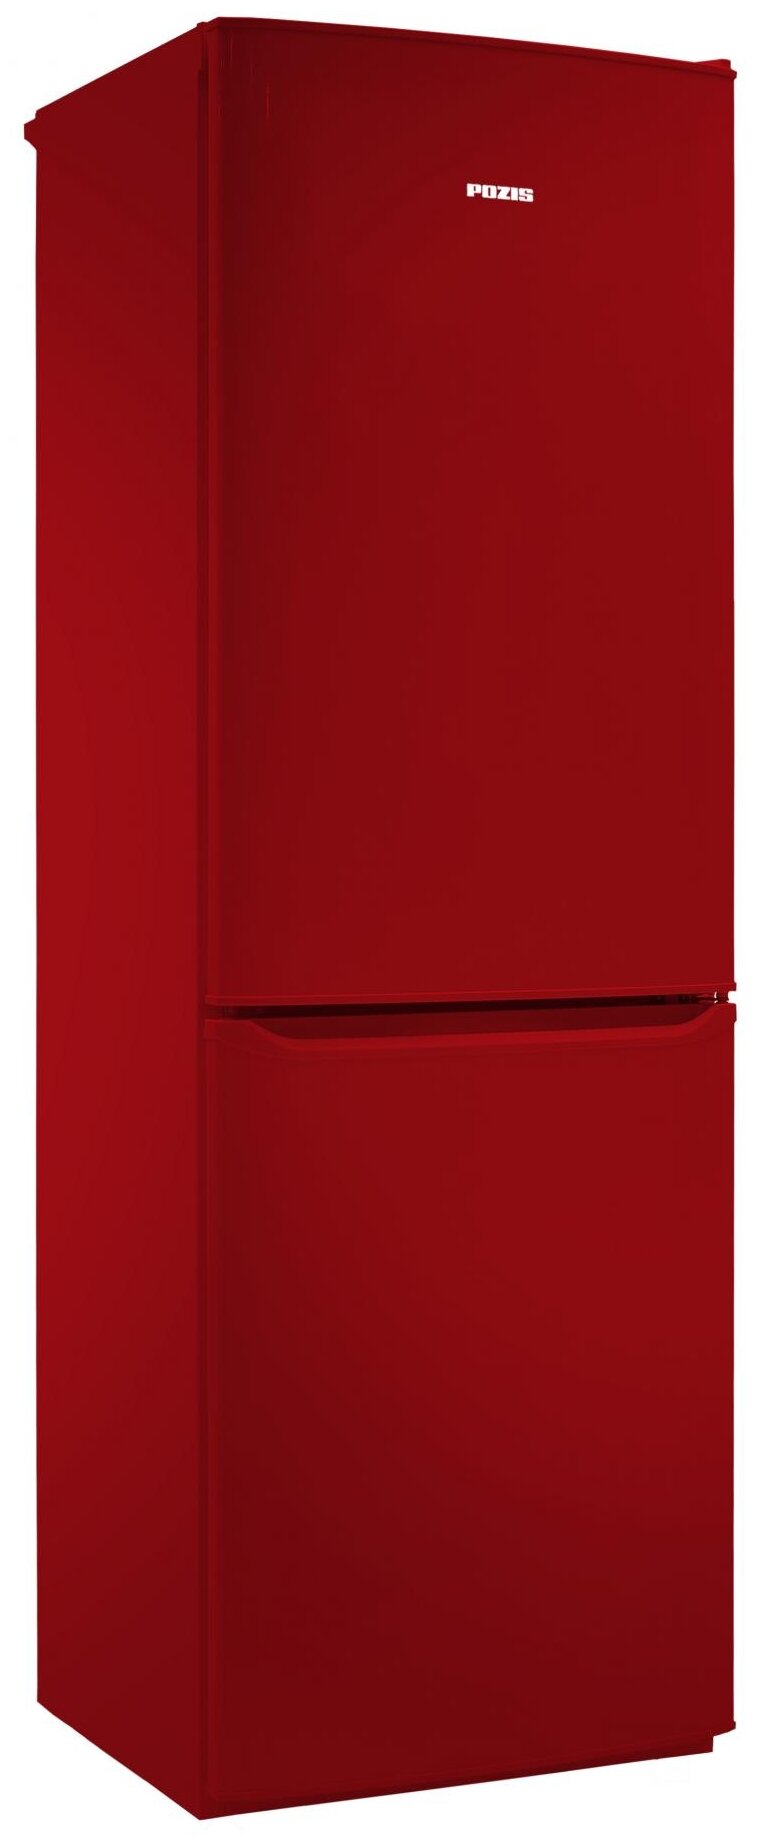 Двухкамерный холодильник Позис RK-149 рубиновый - фотография № 1